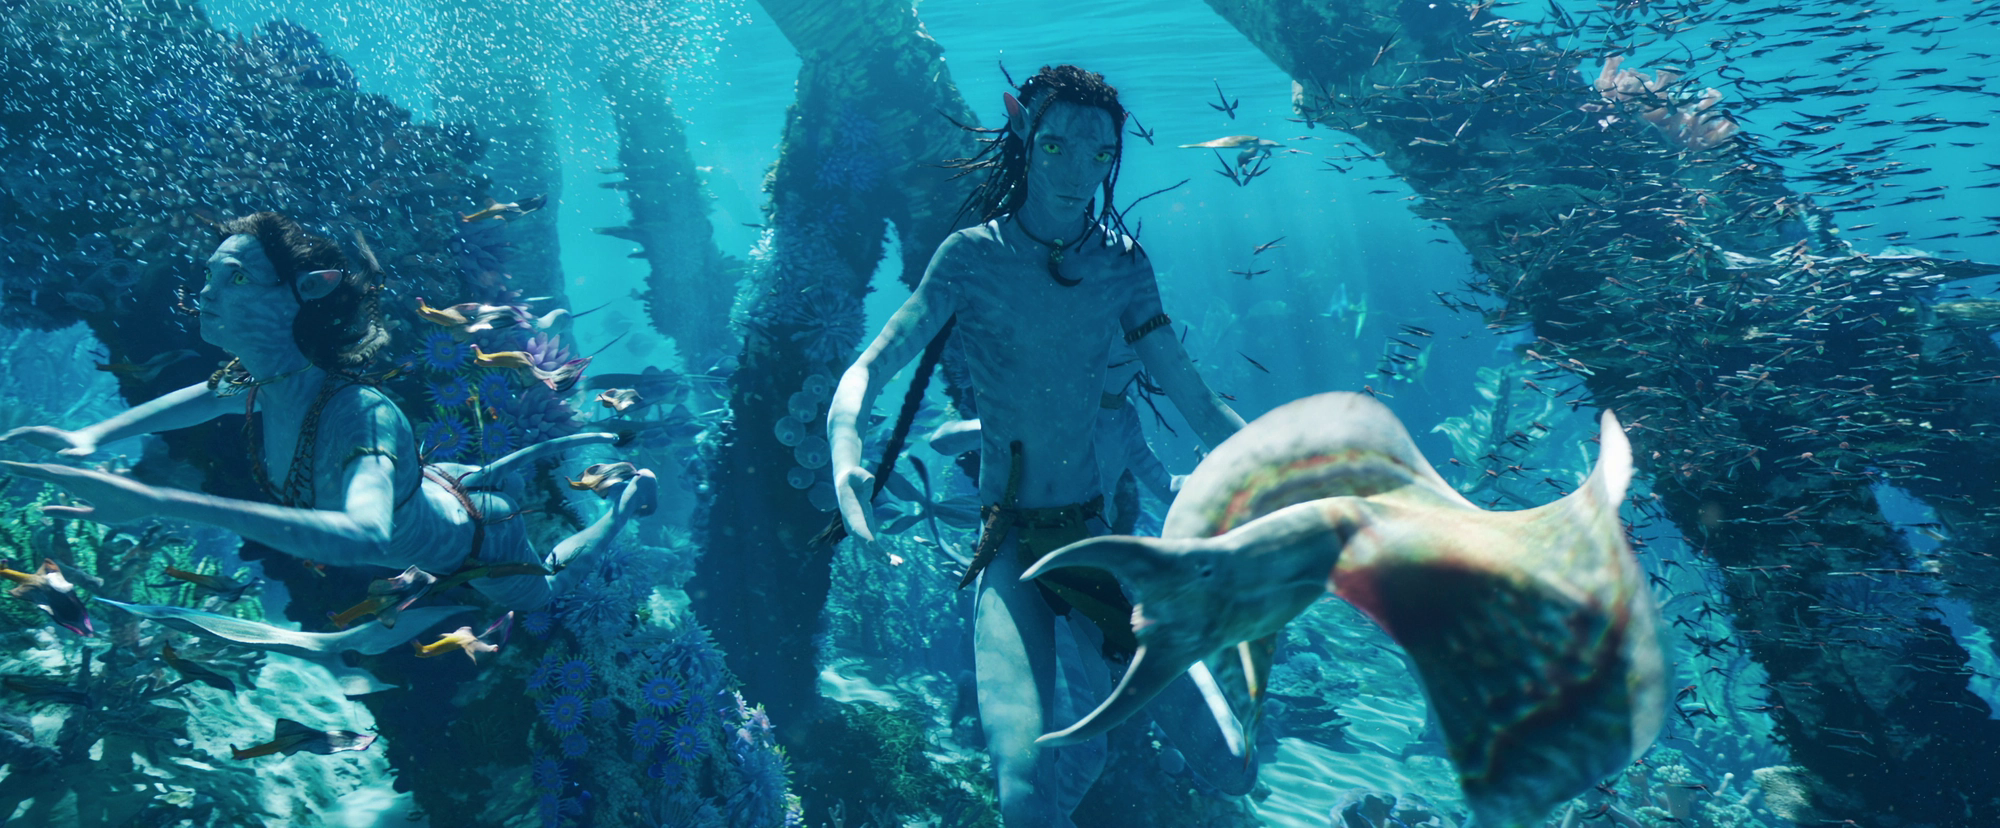 Avatar: The Way Of Water đích thị là kỳ quan thế giới chứ không đơn thuần là một bộ phim - Ảnh 10.